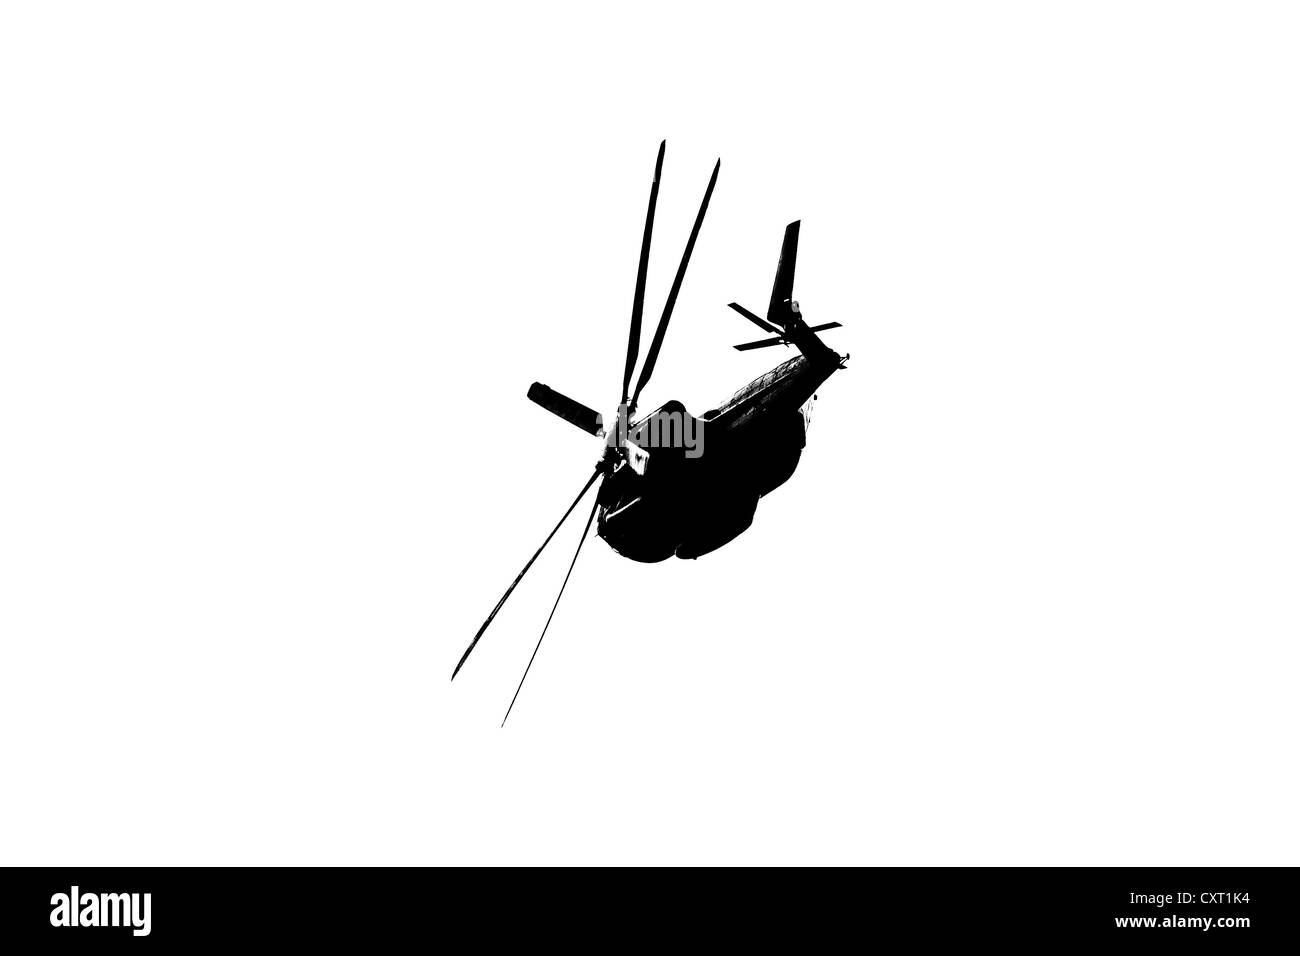 Eine Silhouette eines Hubschraubers. Schwarz / weiß Stockfoto